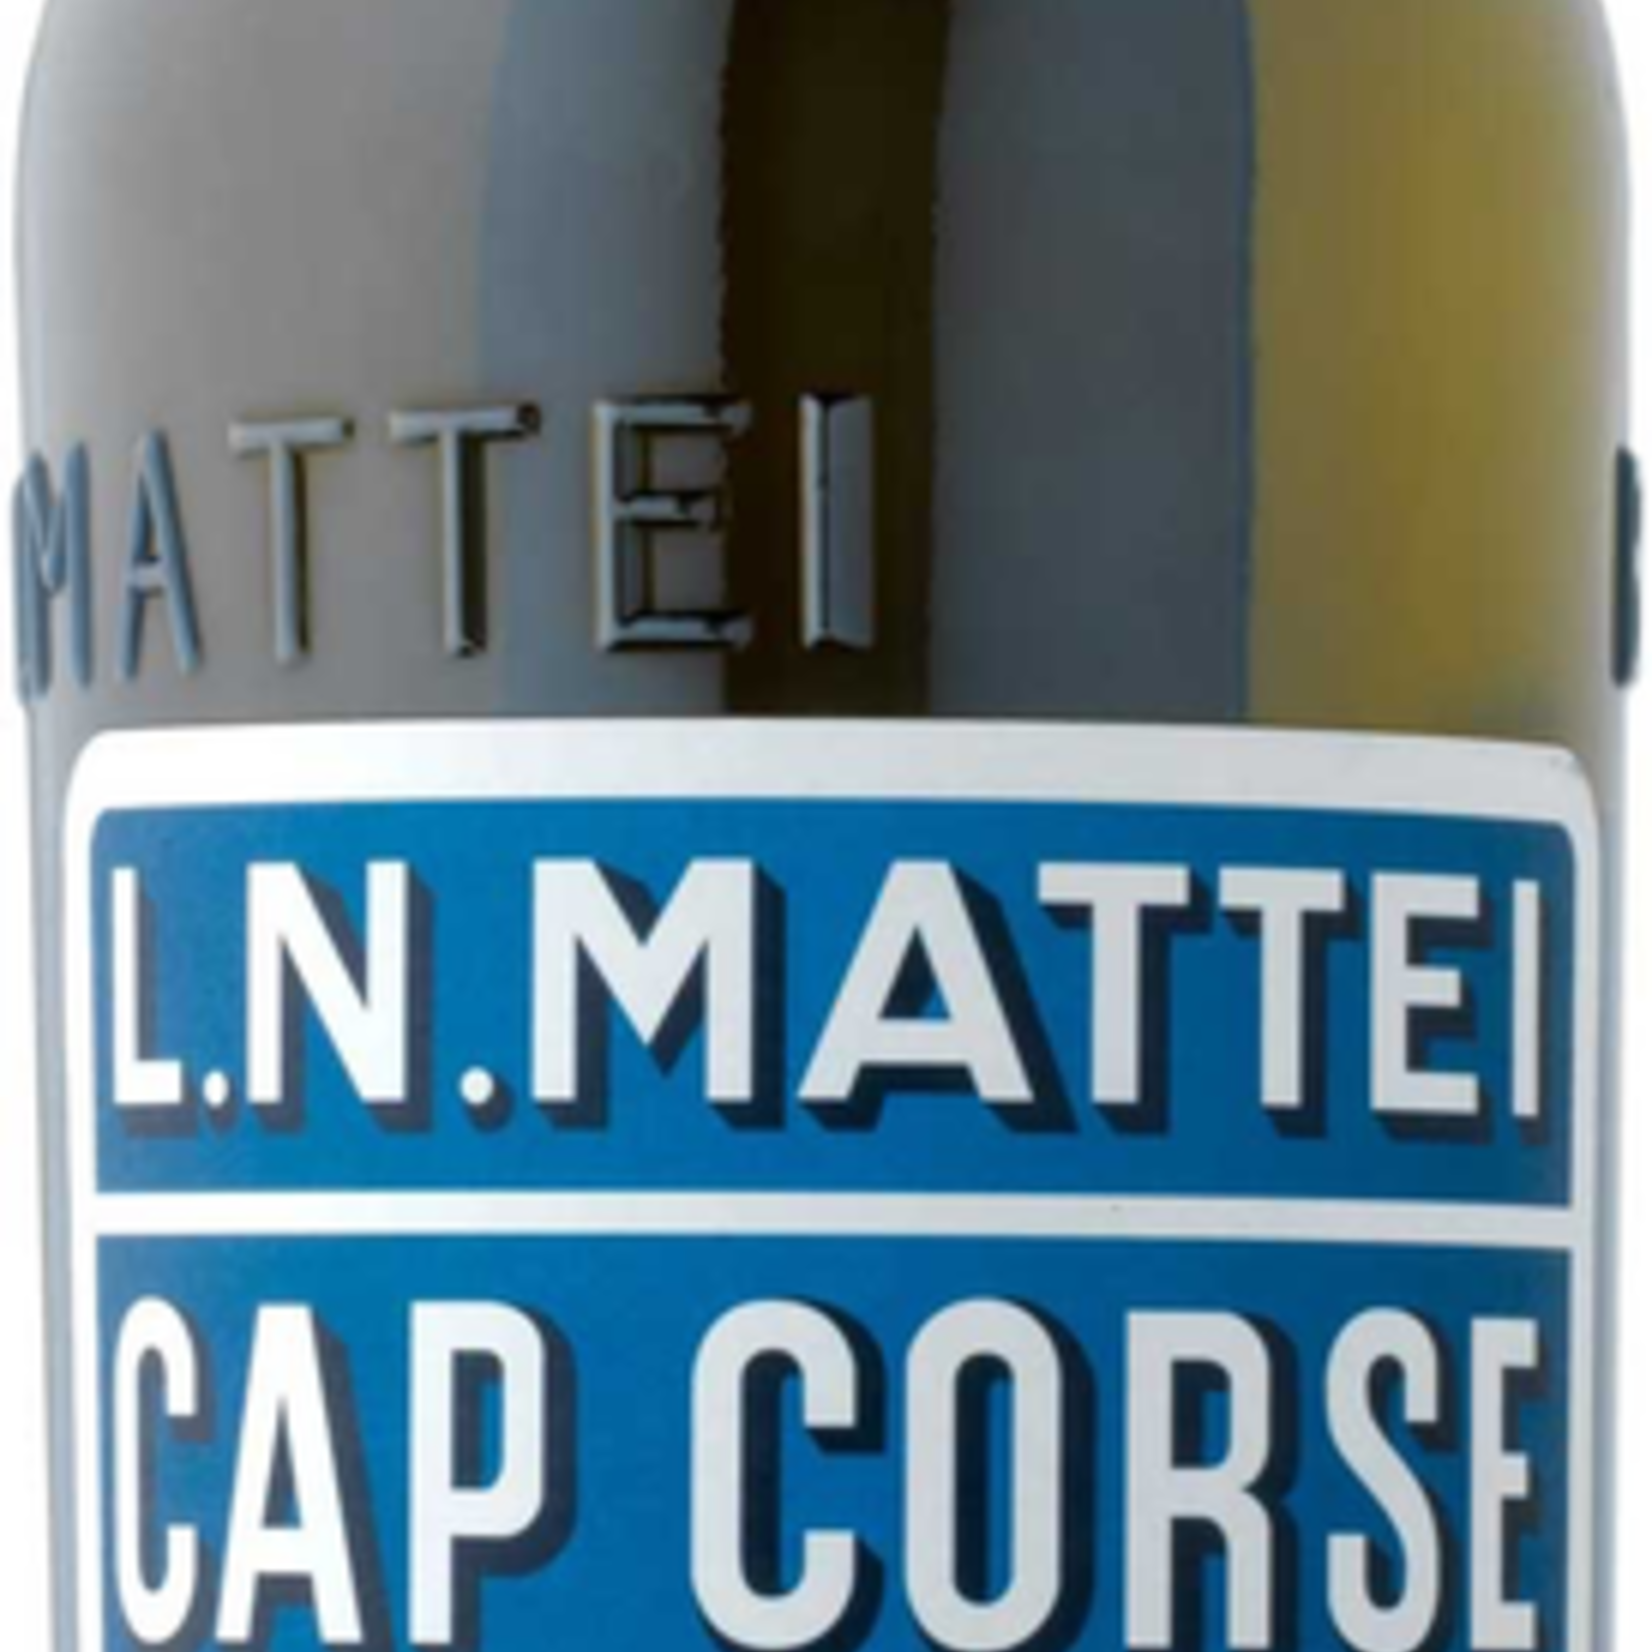 France L.N. Mattei Cap Corse Quinquina Aperitif Blanc